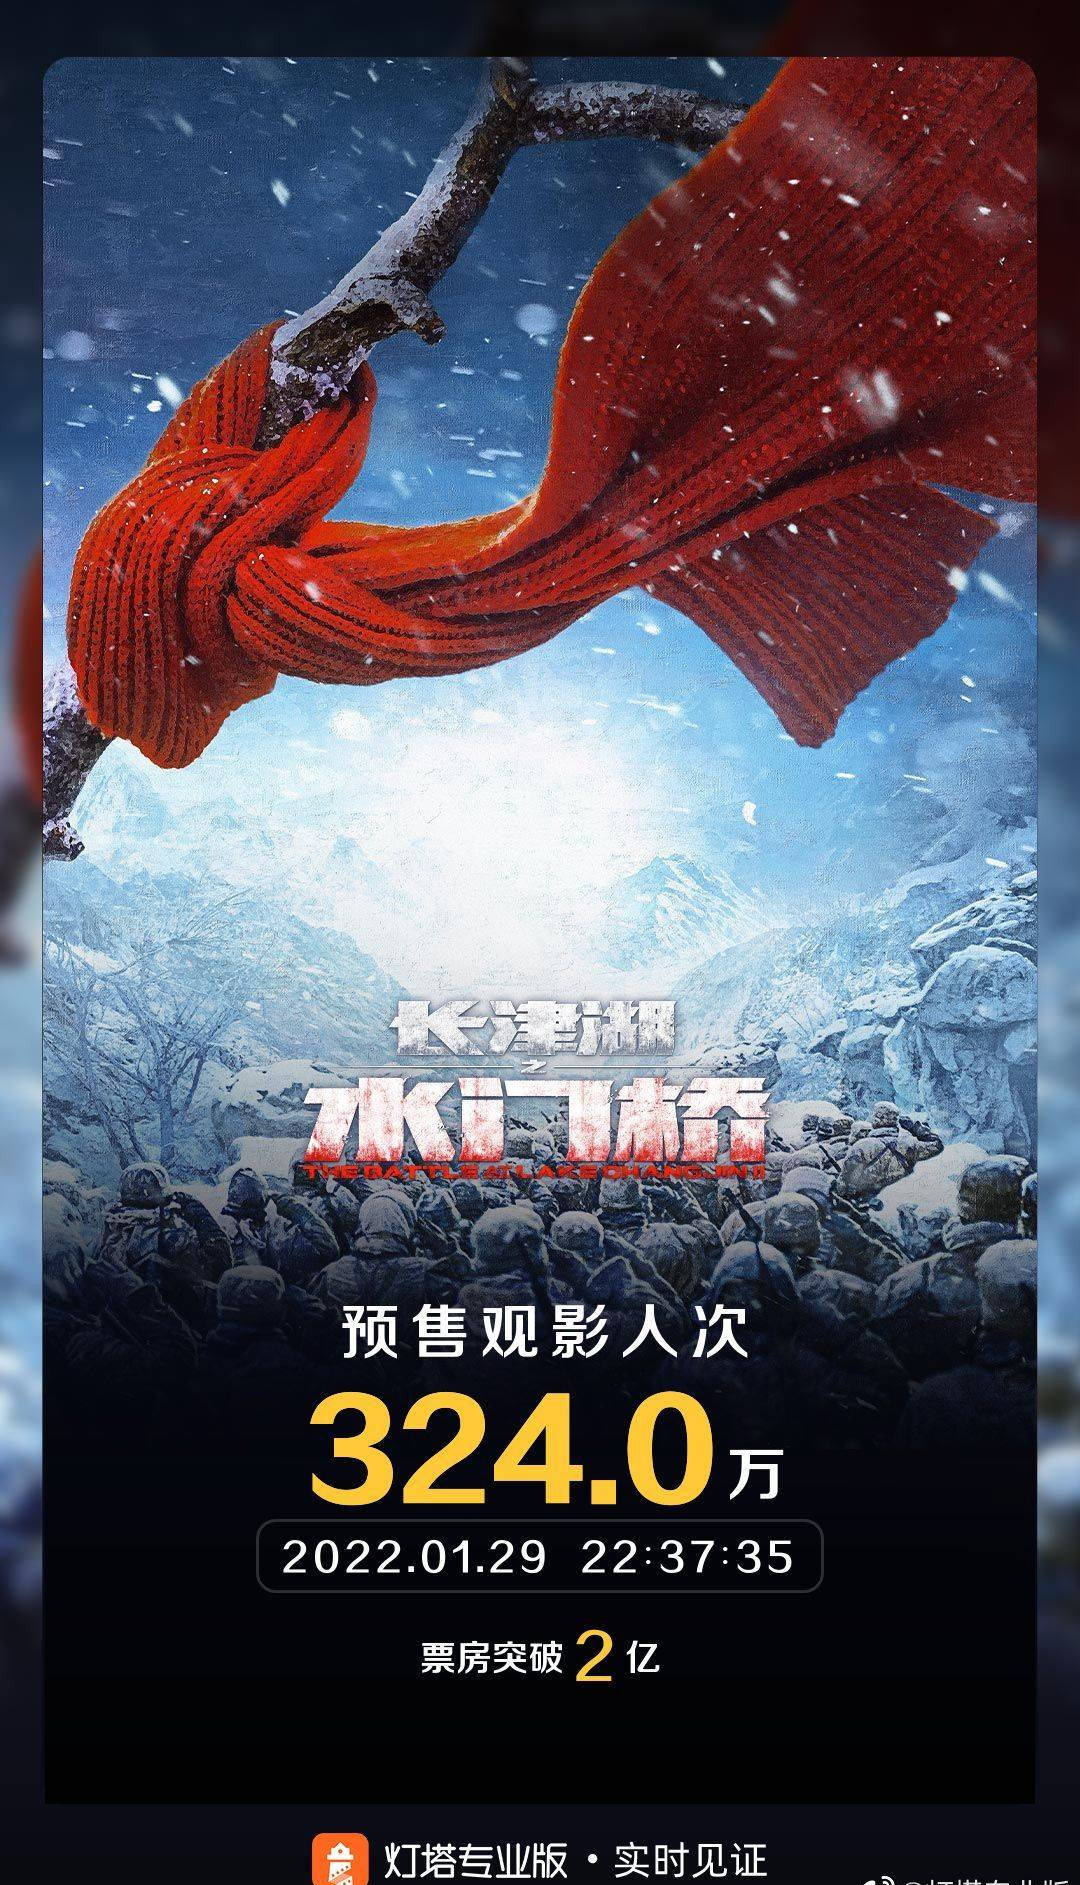 2022年春节档电影《长津湖之水门桥》预售票房已突破2亿